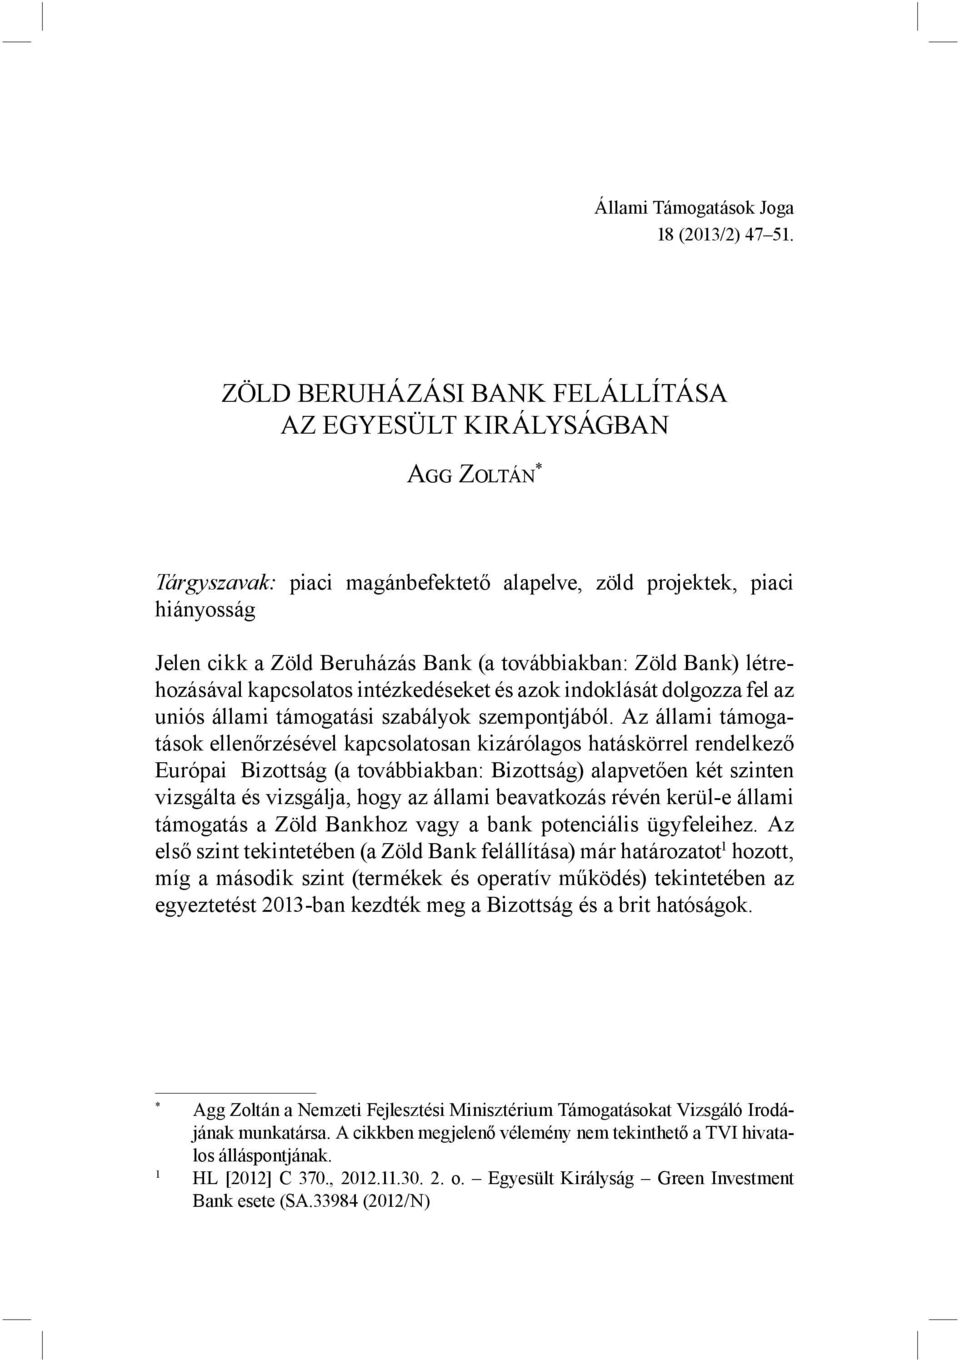 Zöld Bank) létrehozásával kapcsolatos intézkedéseket és azok indoklását dolgozza fel az uniós állami támogatási szabályok szempontjából.